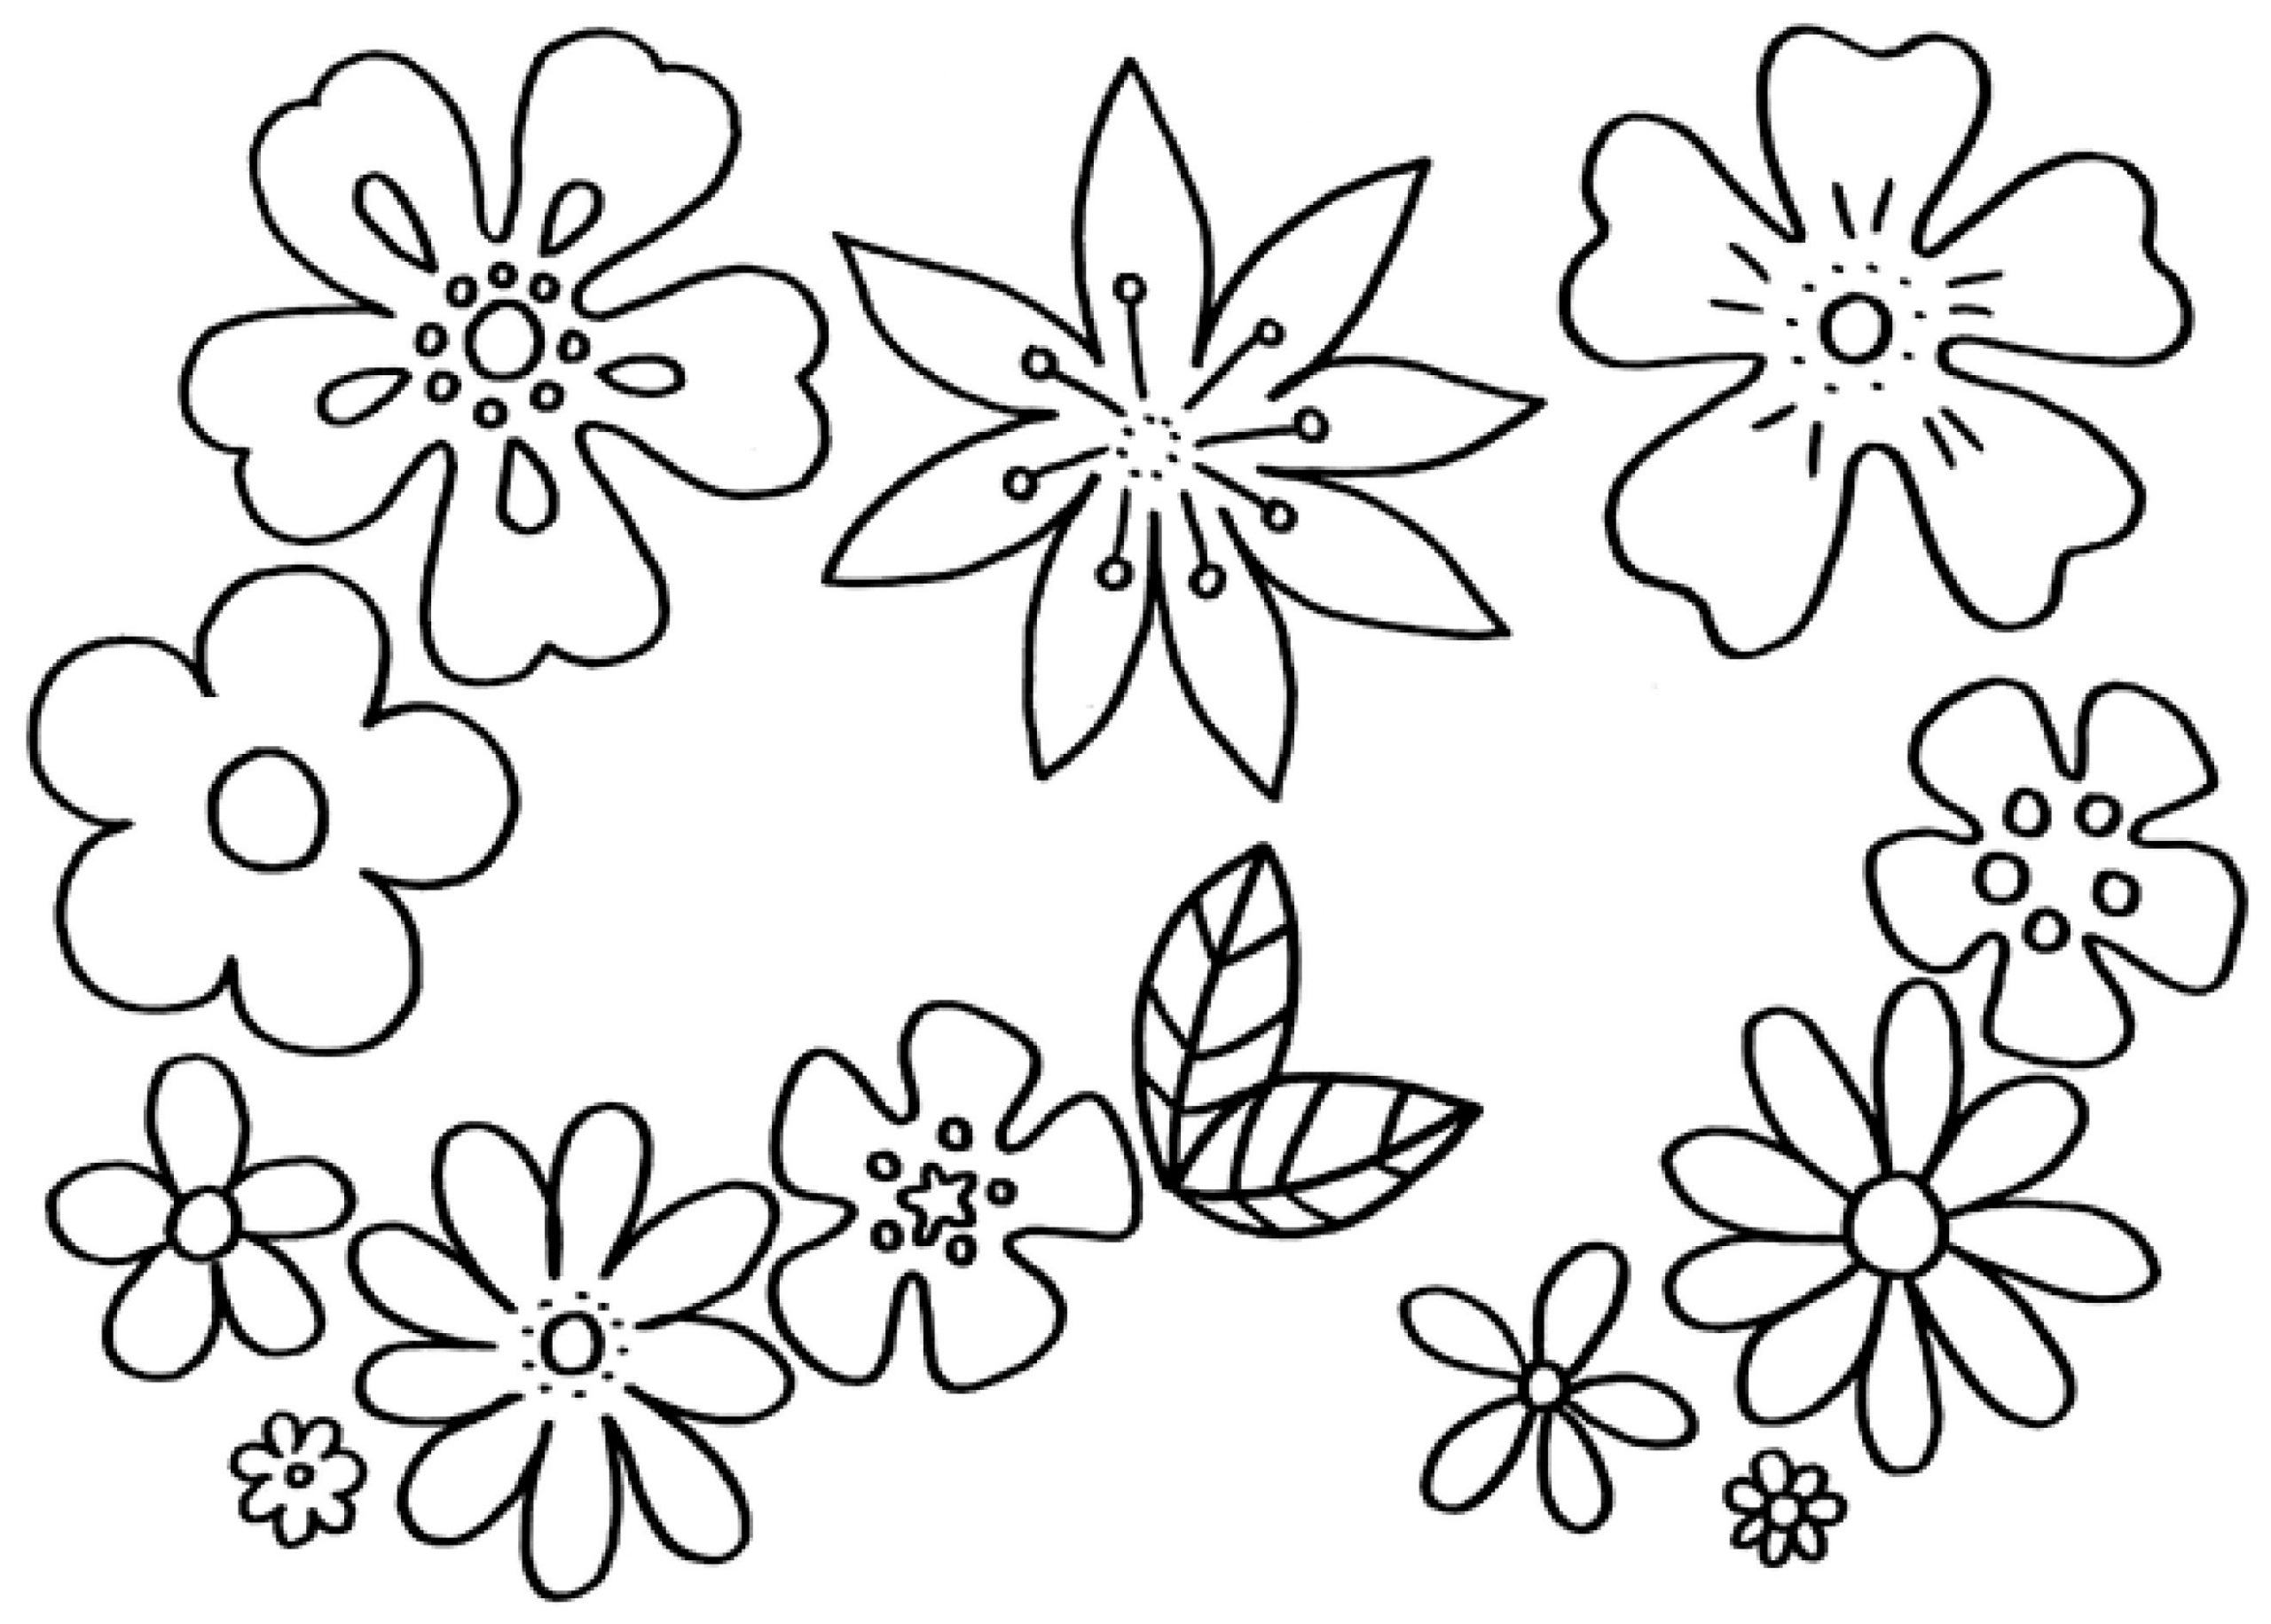 Malvorlagen Blumen - Kostenlose Ausmalbilder | Mytoys Blog in Blumenstrauß Ausmalbilder